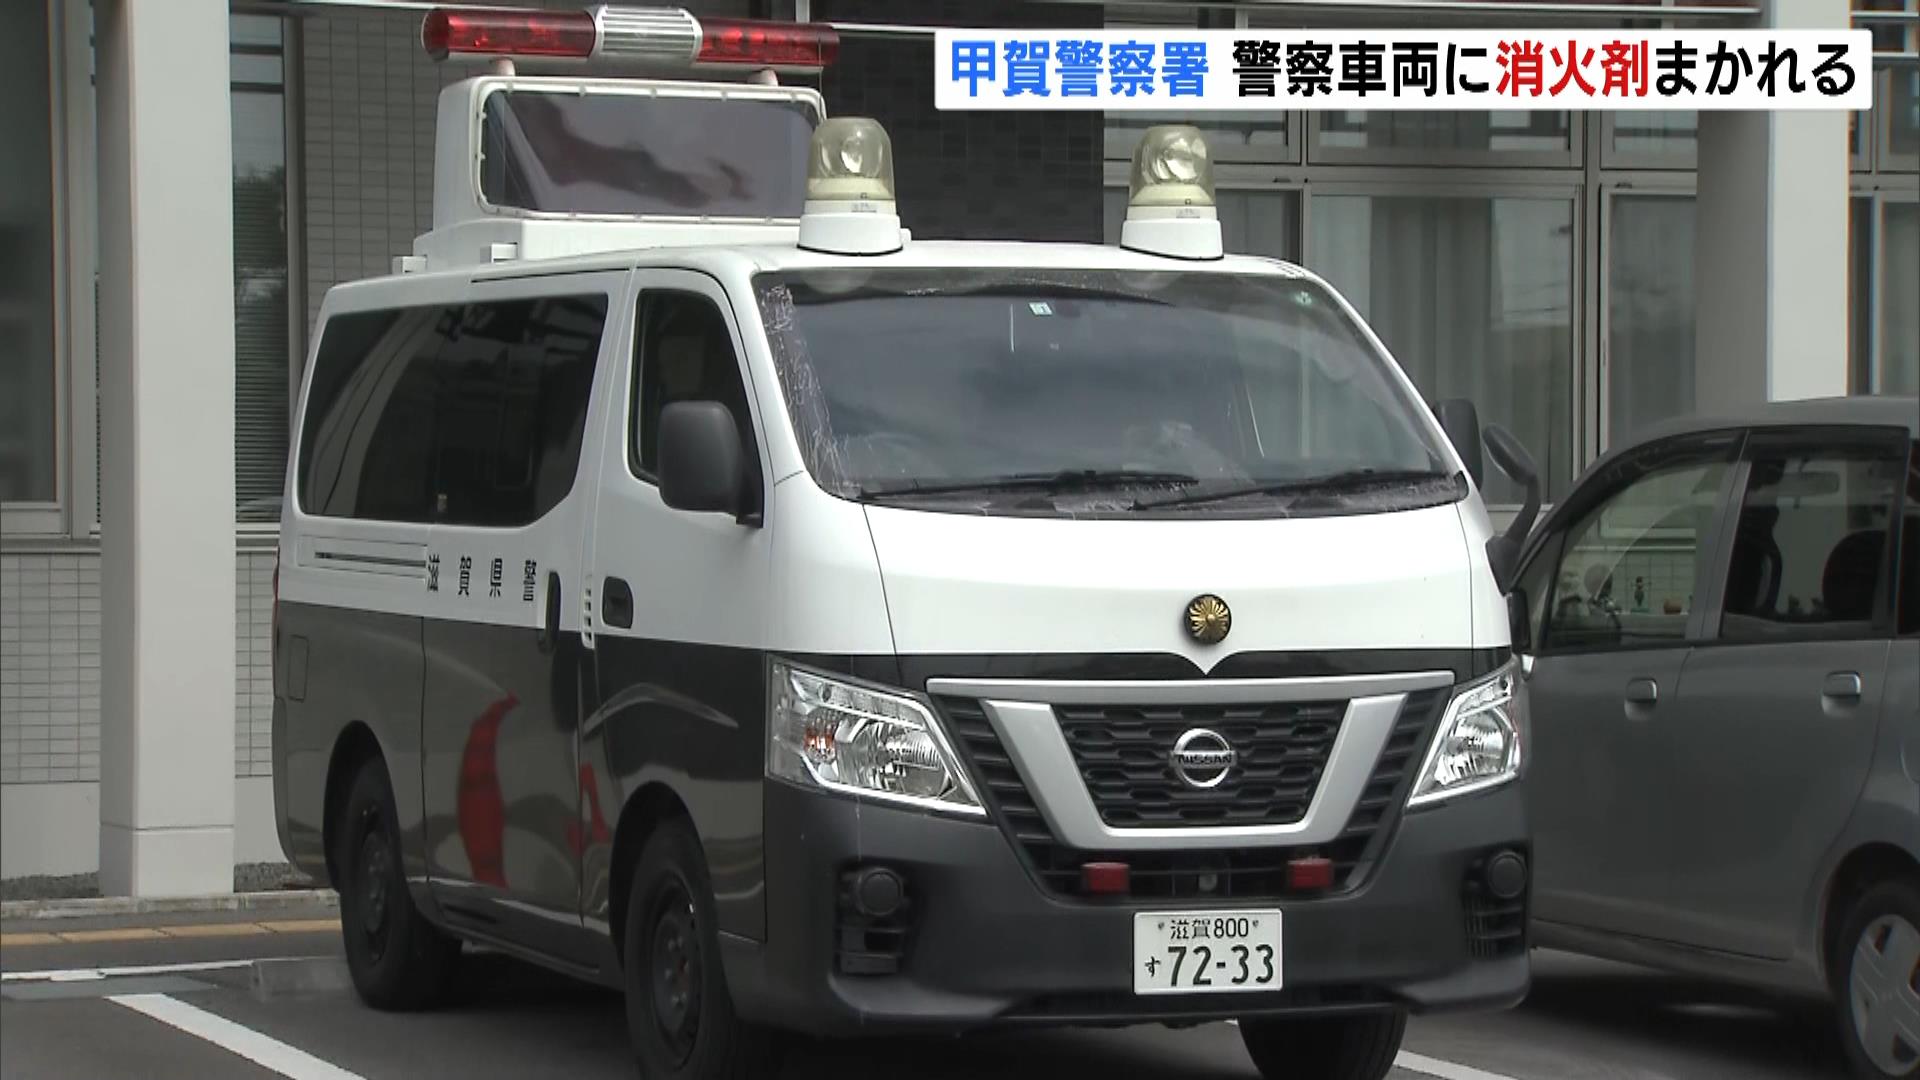 パトカーなど４台に消火剤が吹き付けられる　器物損壊事件として捜査　滋賀・甲賀警察署